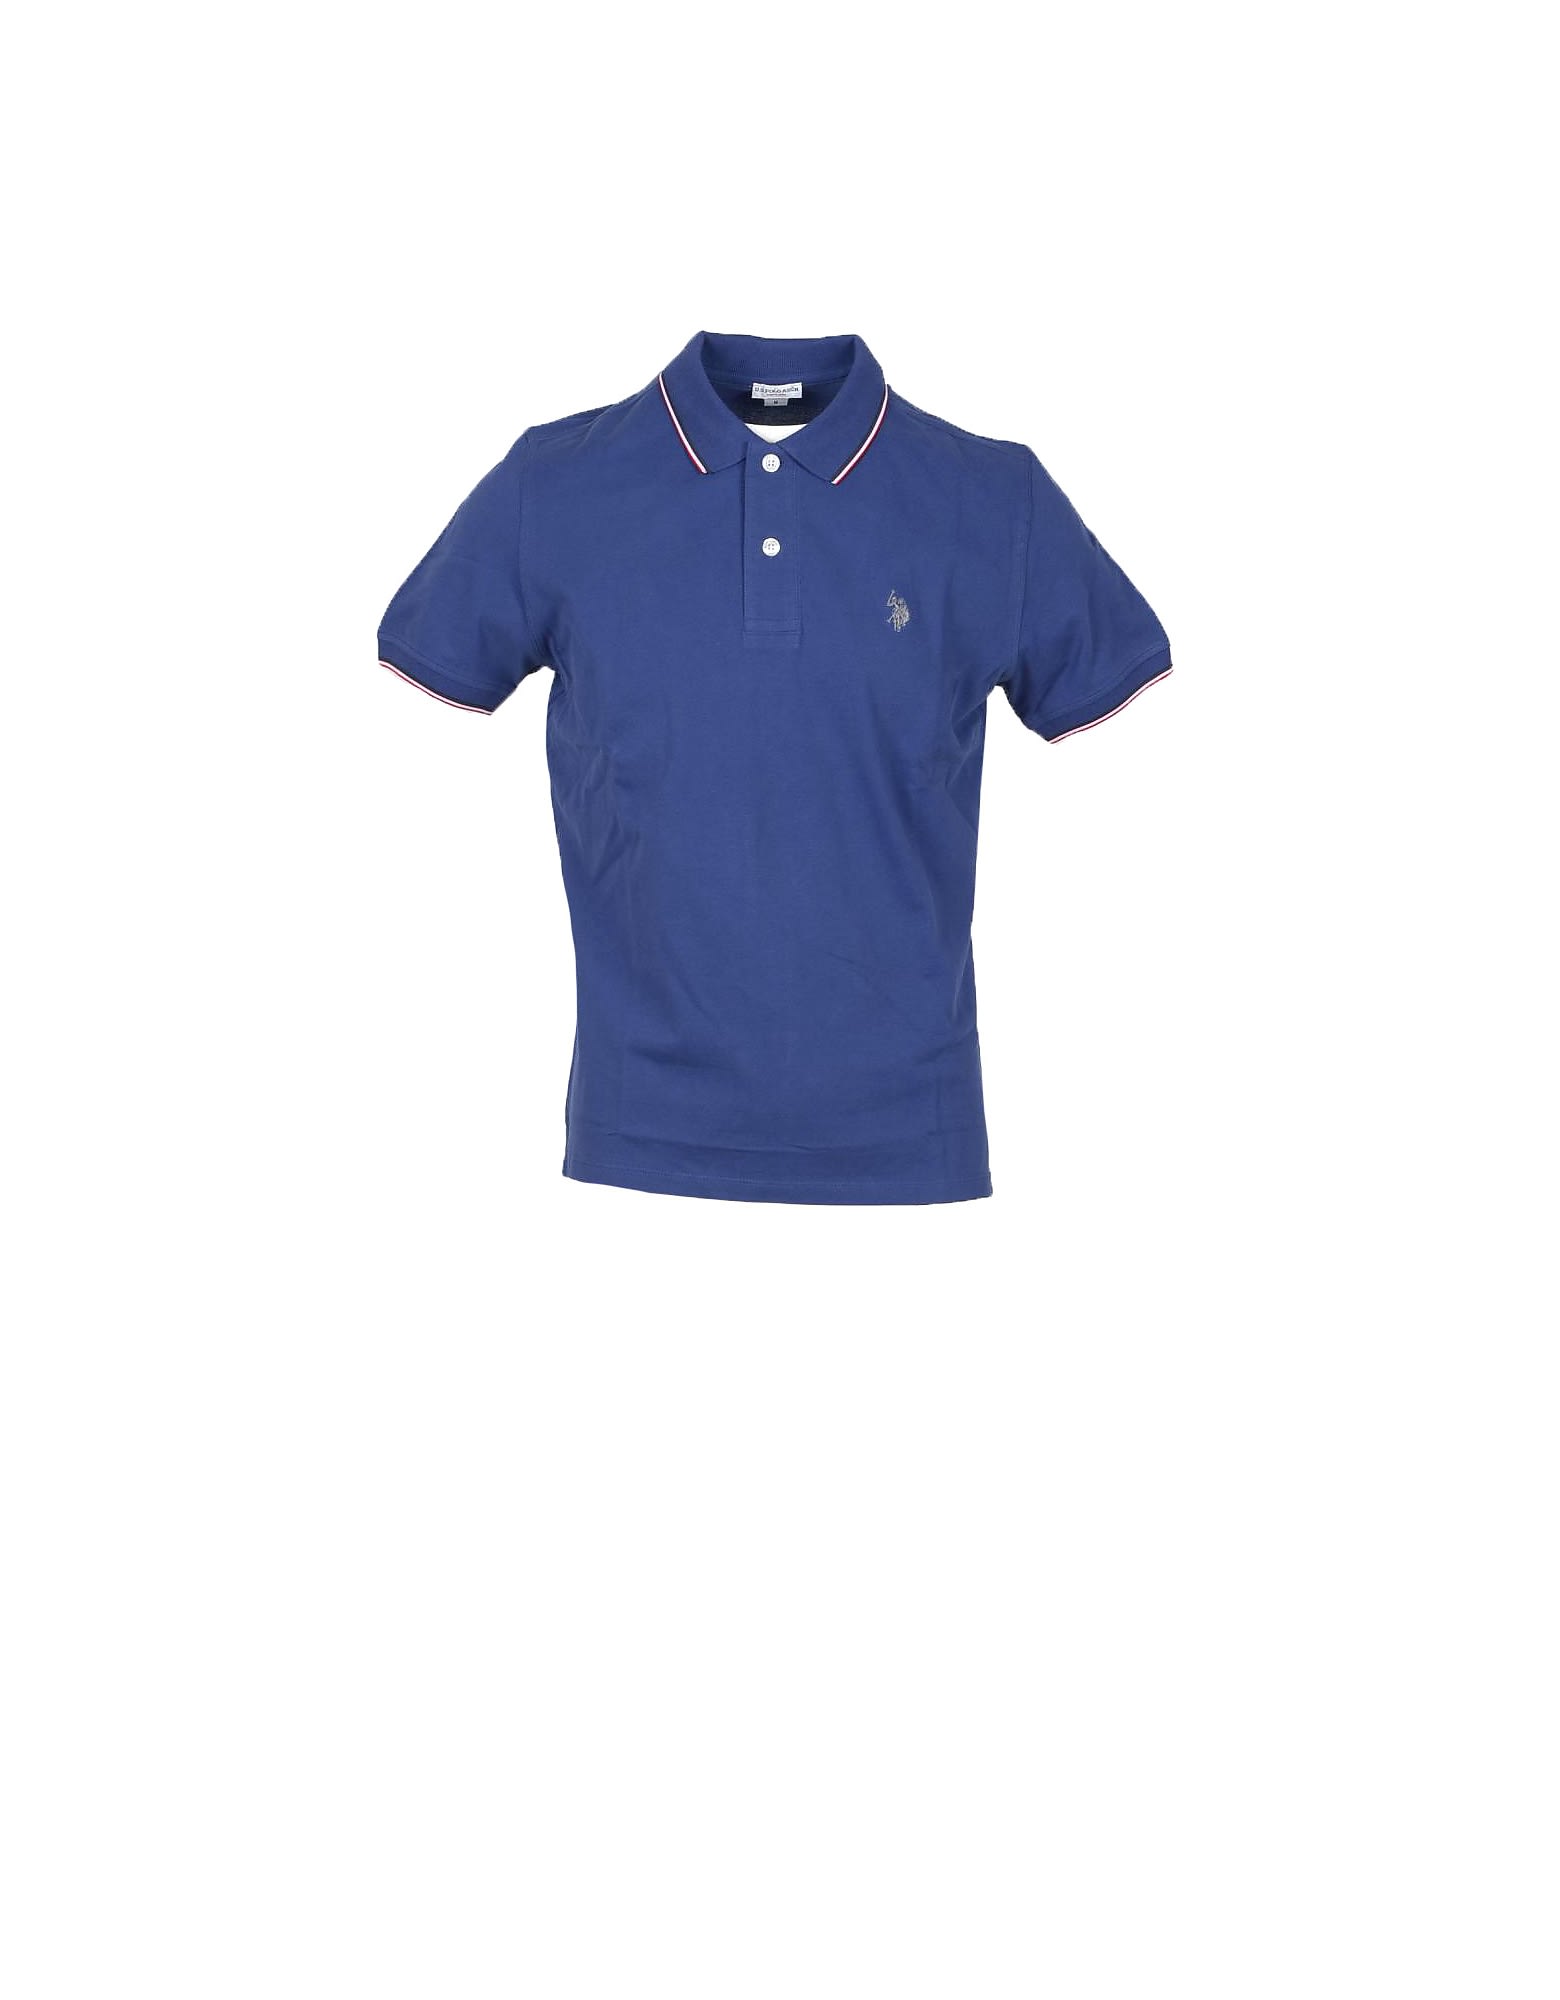 U.s. Polo Assn. Bright Blue Piqué Cotton Mens Polo Shirt